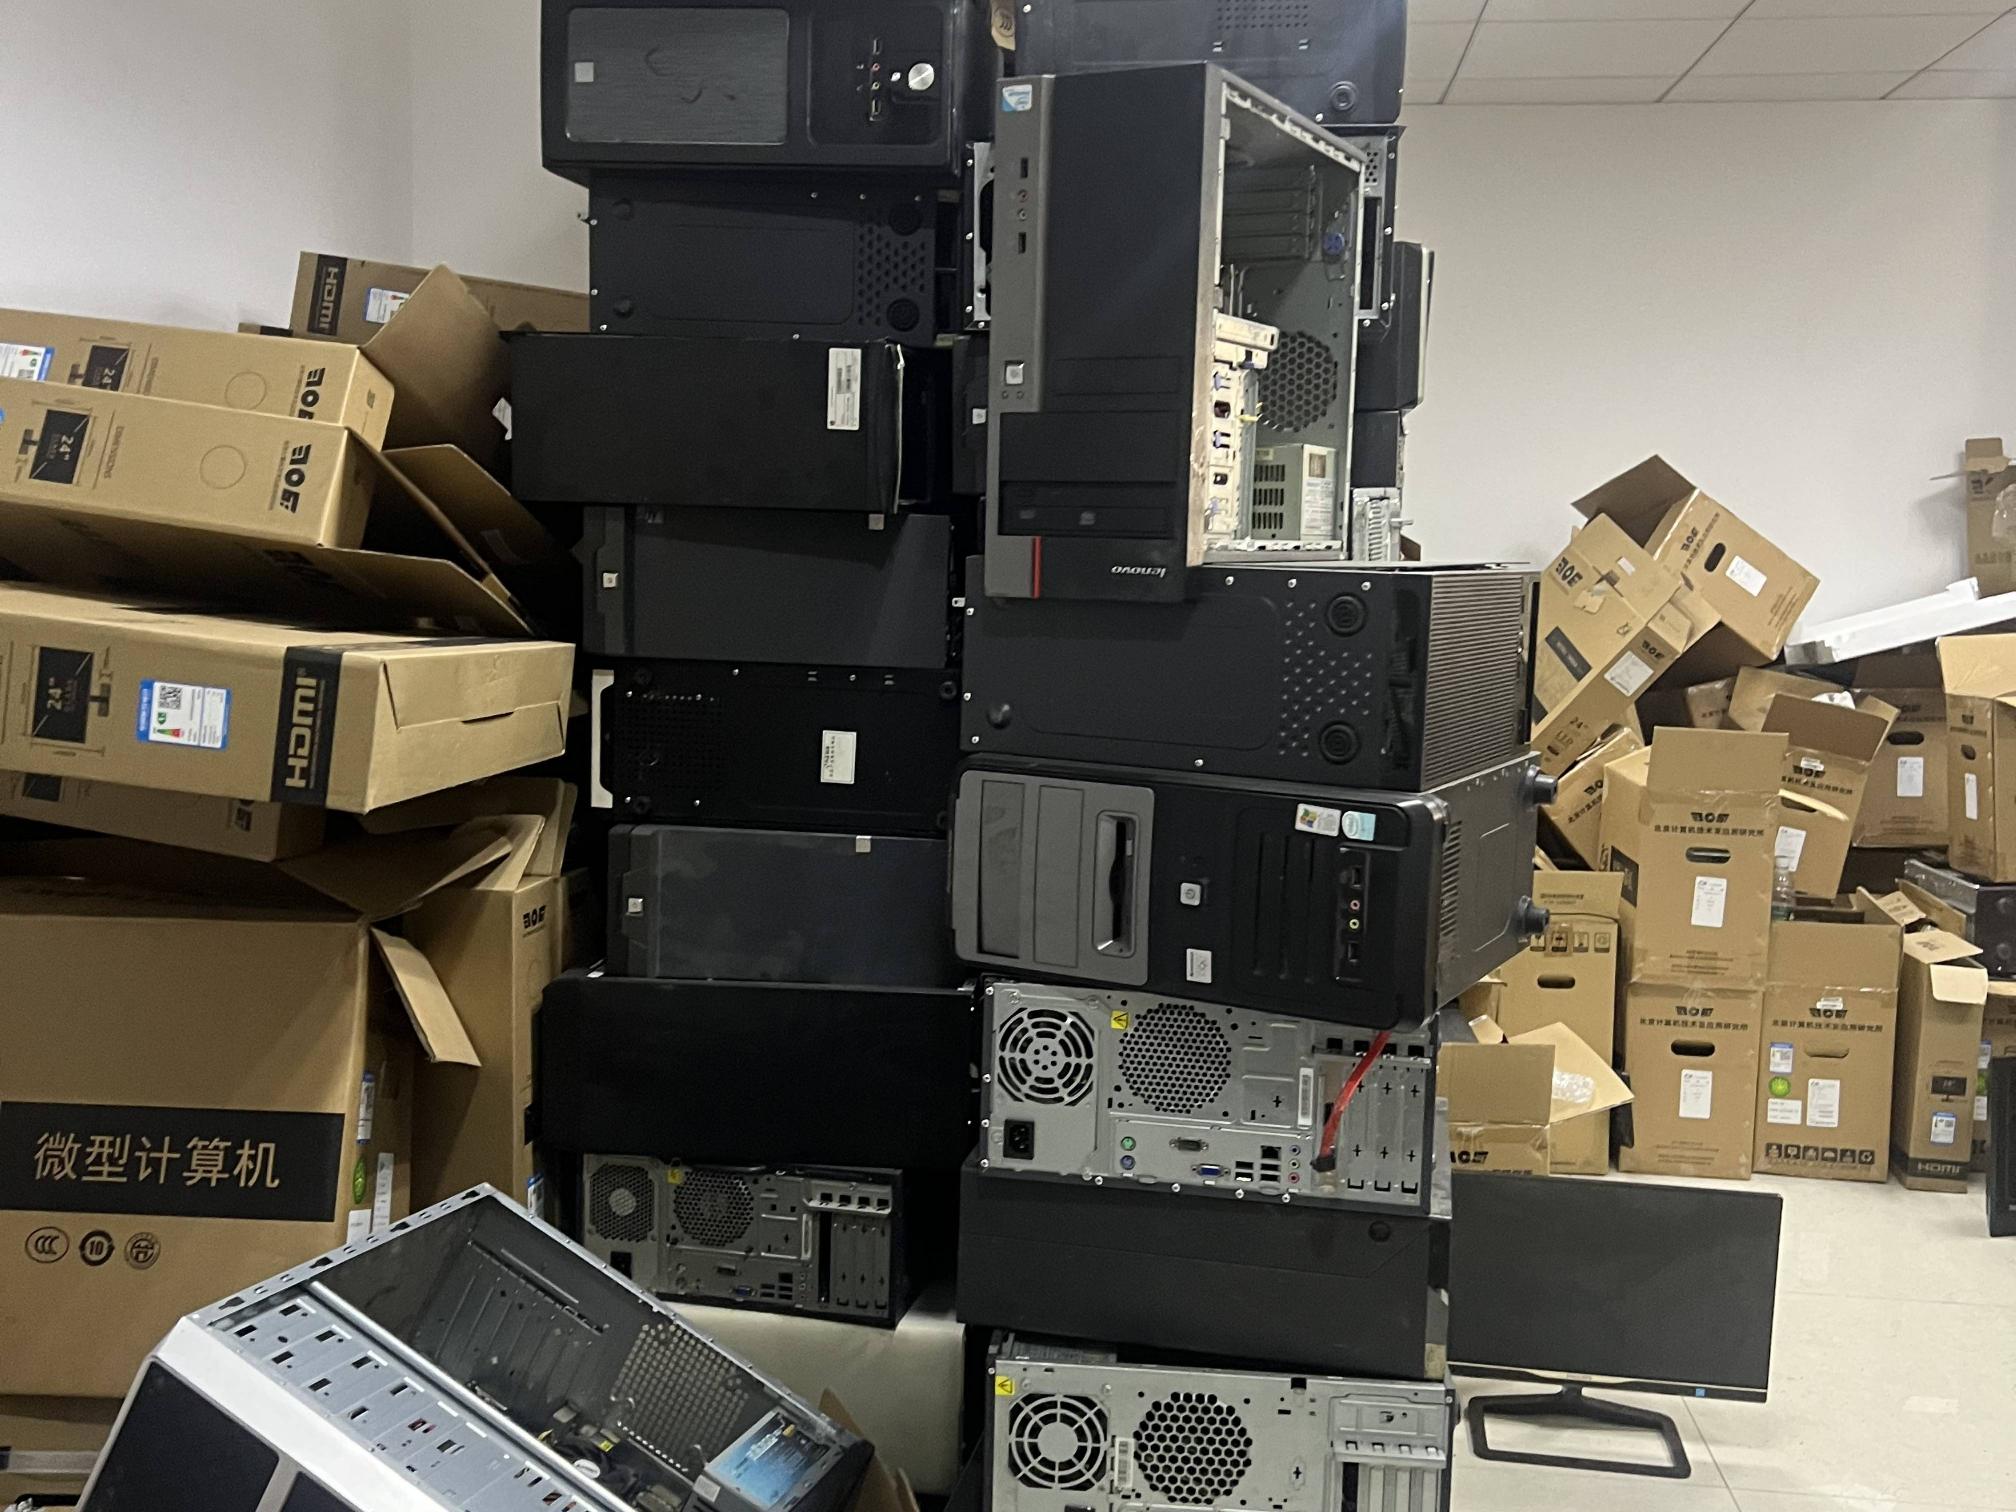 湘西州本级公物仓报废电脑及设备744台套一批出售招标